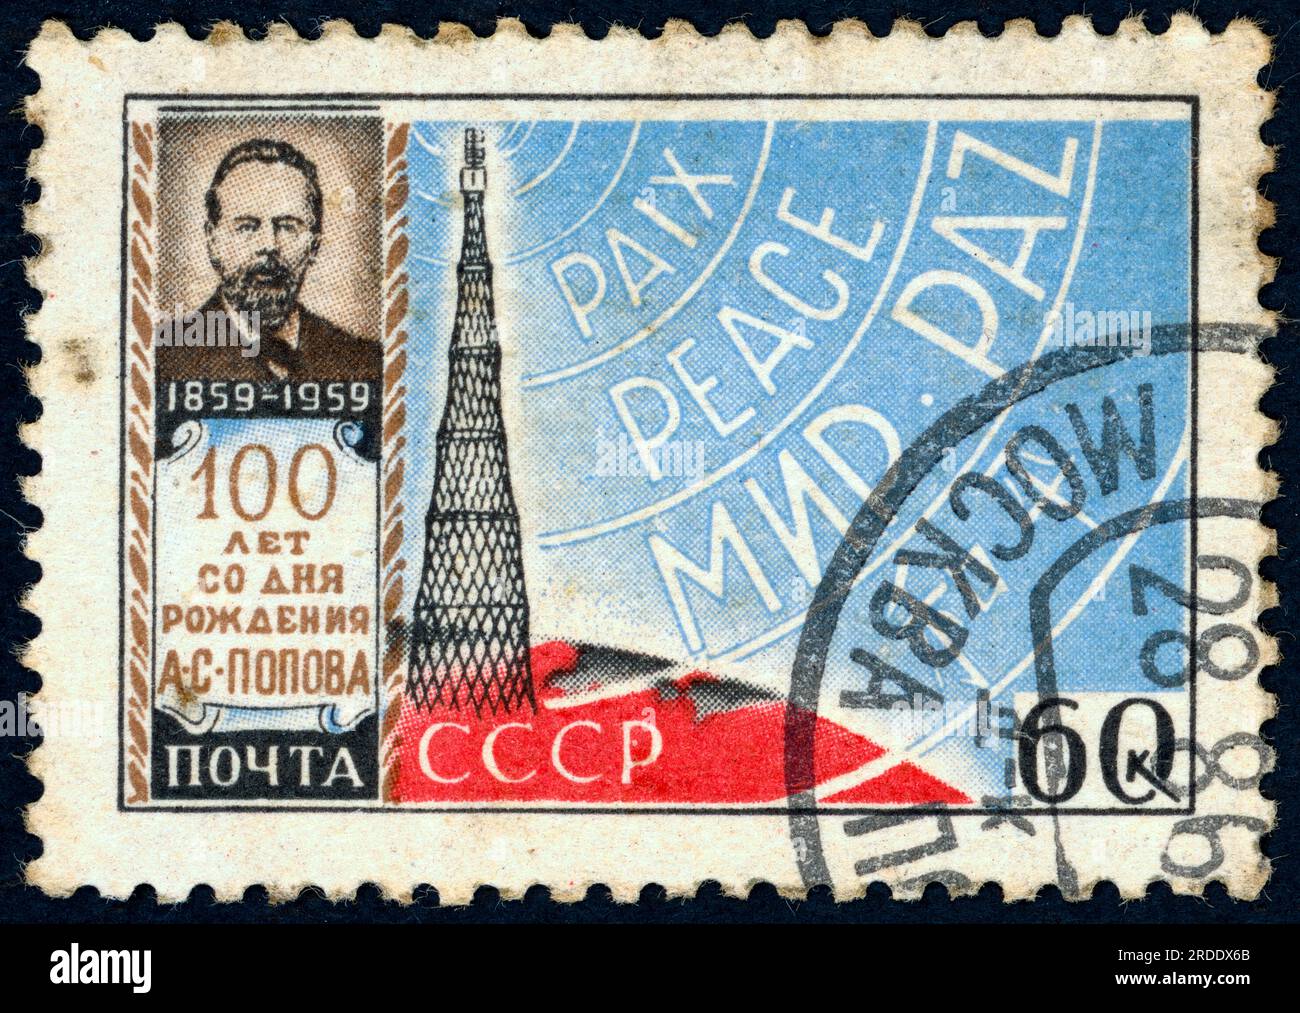 Alexander Stepanovich Popov (1859 – [O.S. 1905] 1906). Timbre-poste émis en URSS en 1959 à l'occasion du 100e anniversaire de la naissance de Popov. Popov (parfois orthographié Popoff) était un physicien russe, qui fut l'une des premières personnes à inventer un récepteur radio. Banque D'Images